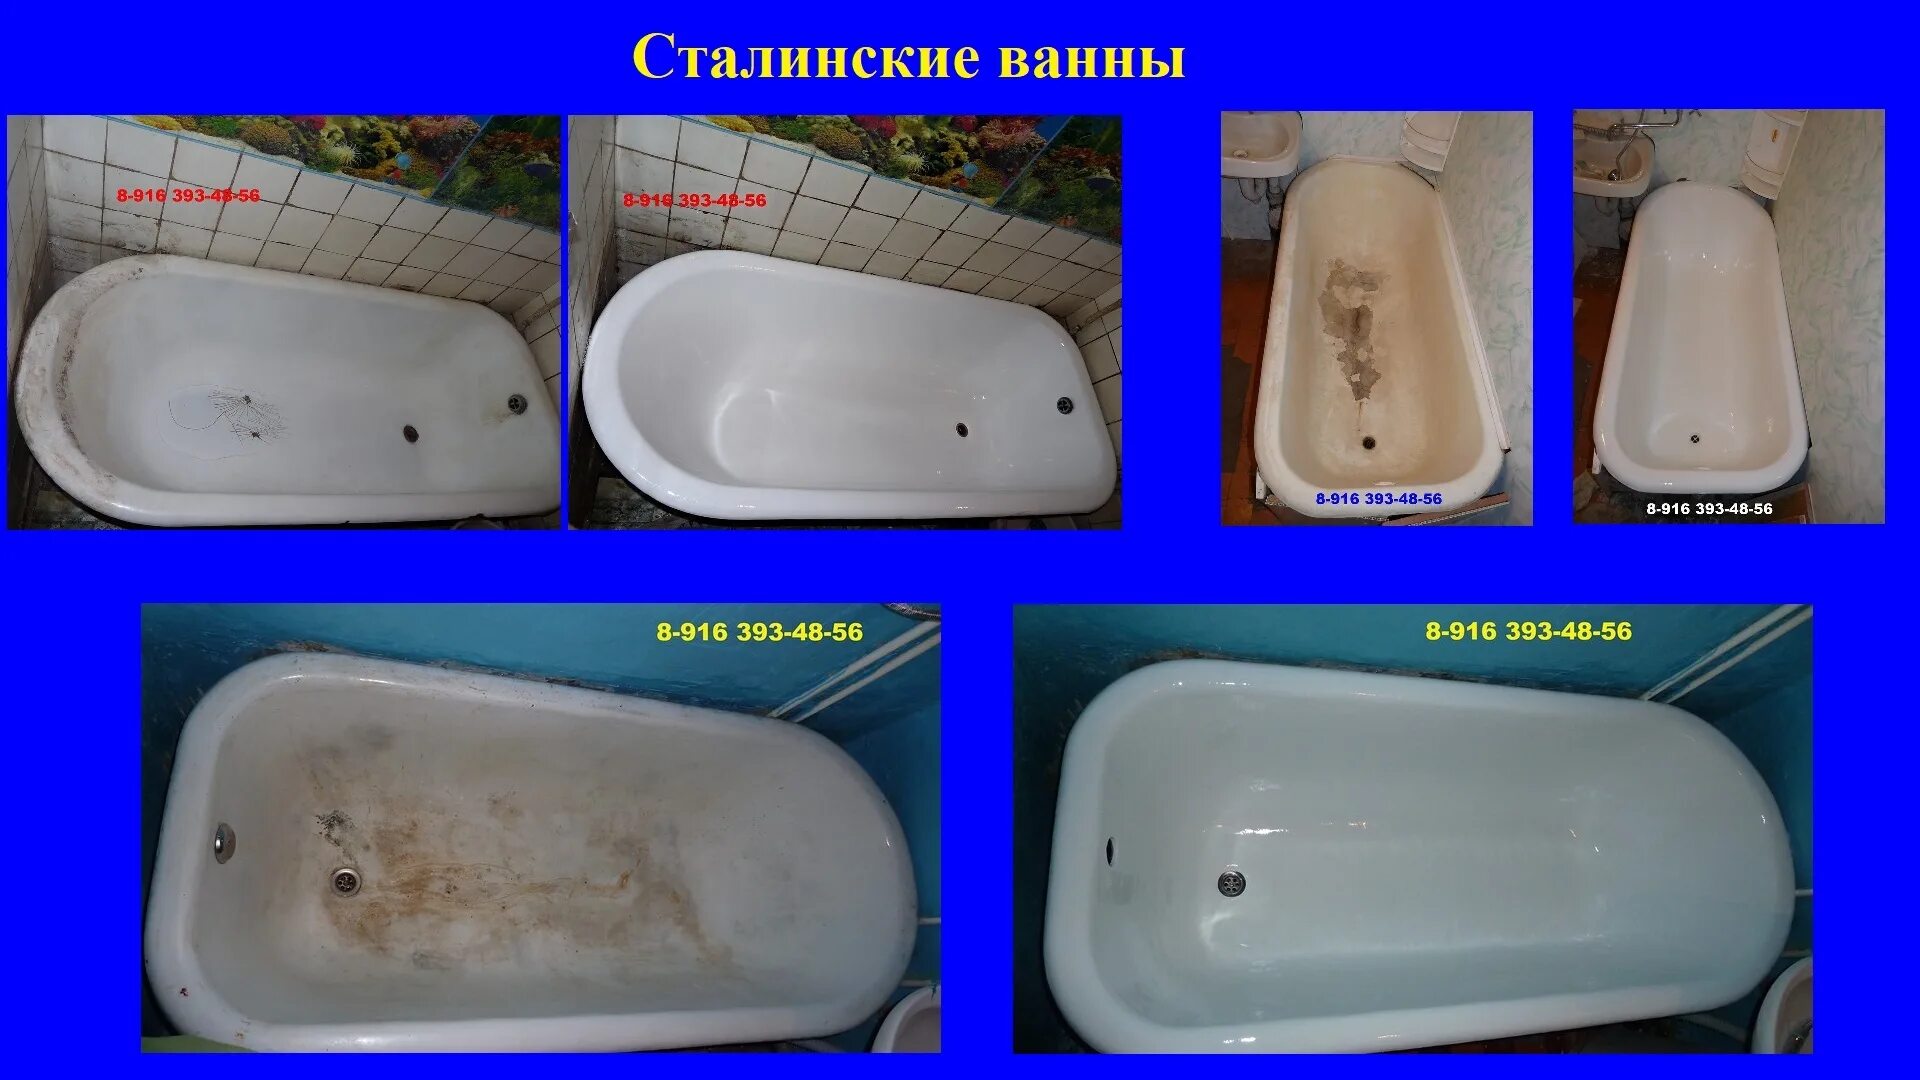 Эмалировка ванной цена. Эмалировка чугунной ванны. Эмалировка ванны в Москве. Сравнение ванн. Реконструкция ванны чугунной.